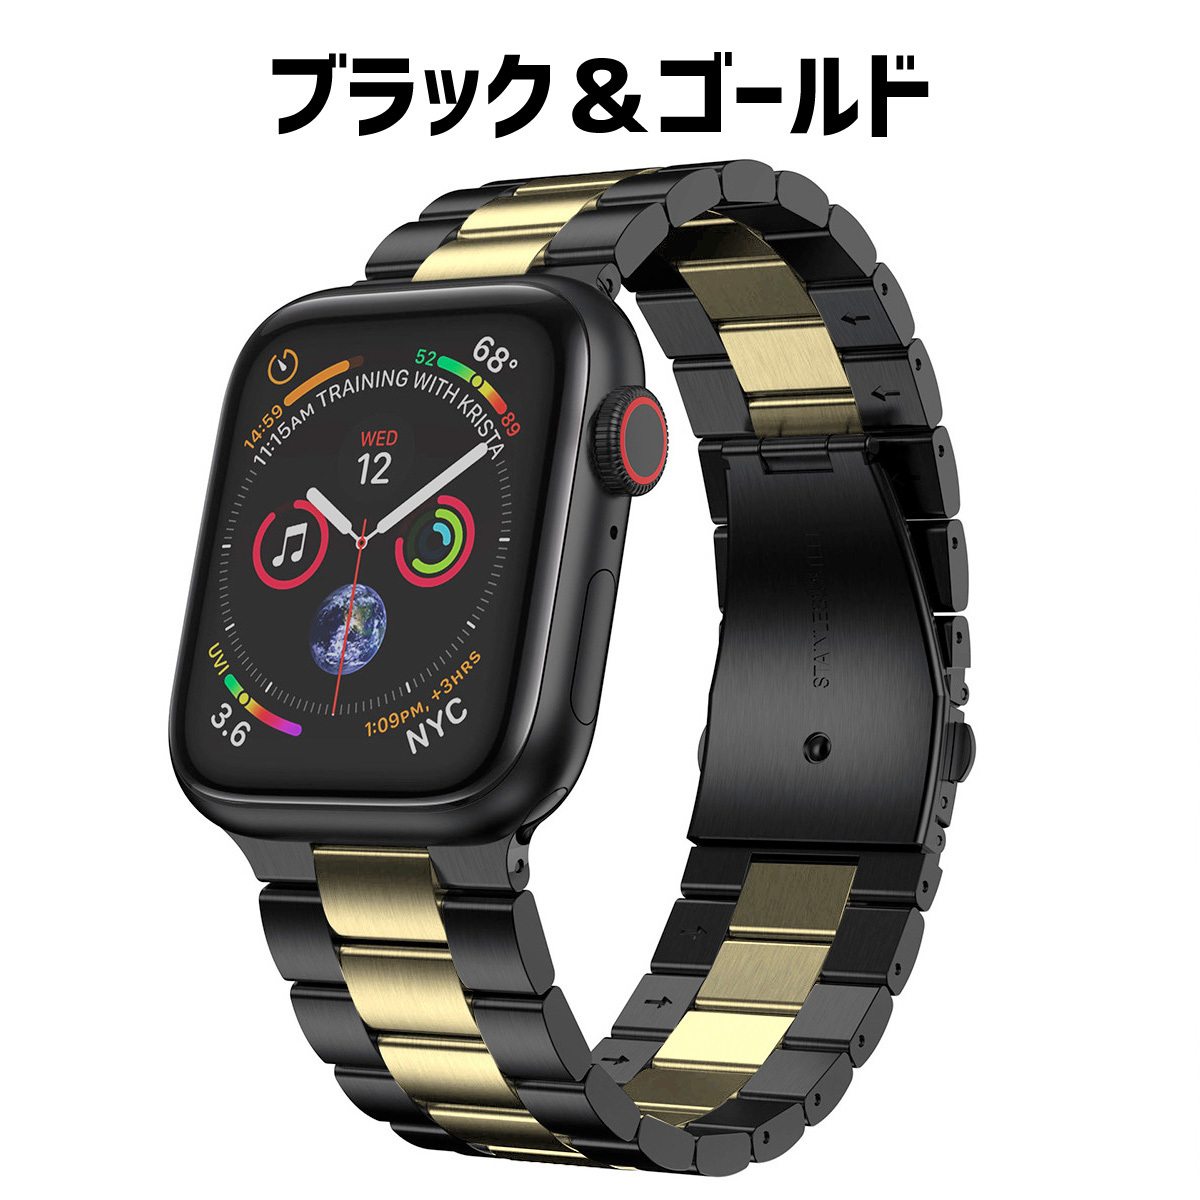 直送送料無料 ☆ Apple Watch 44mm アップルウォッチ メ ト 風 PP 138